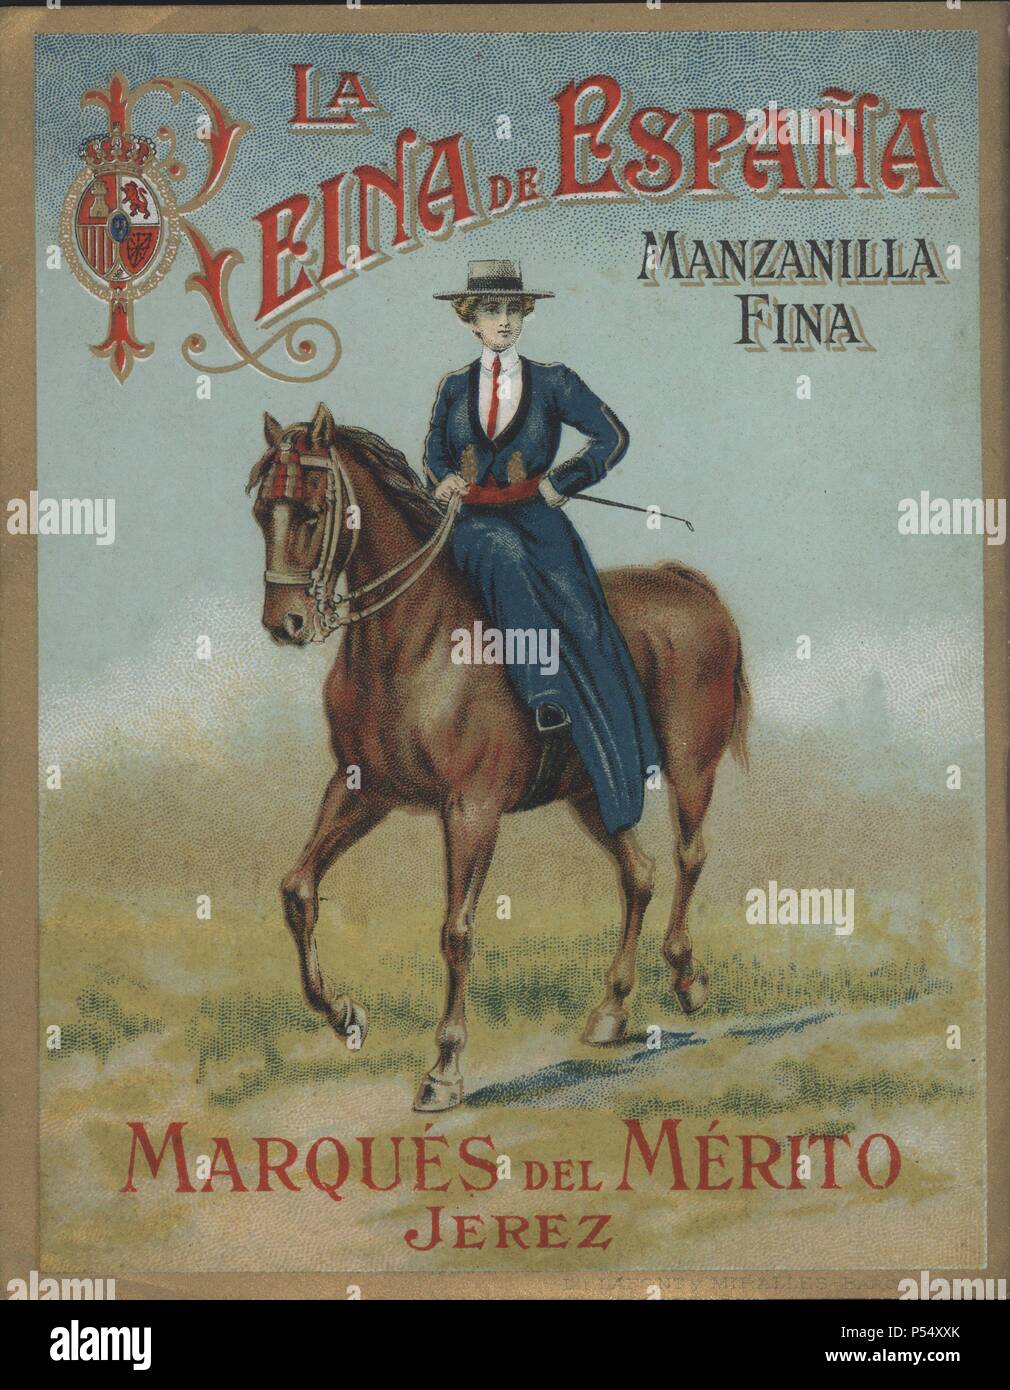 Publicidad. Etiqueta de Manzanilla fina, La Reina de España, de Bodegas del Marqués del Mérito,  Jerez de la Frontera. Años 1910. Stock Photo